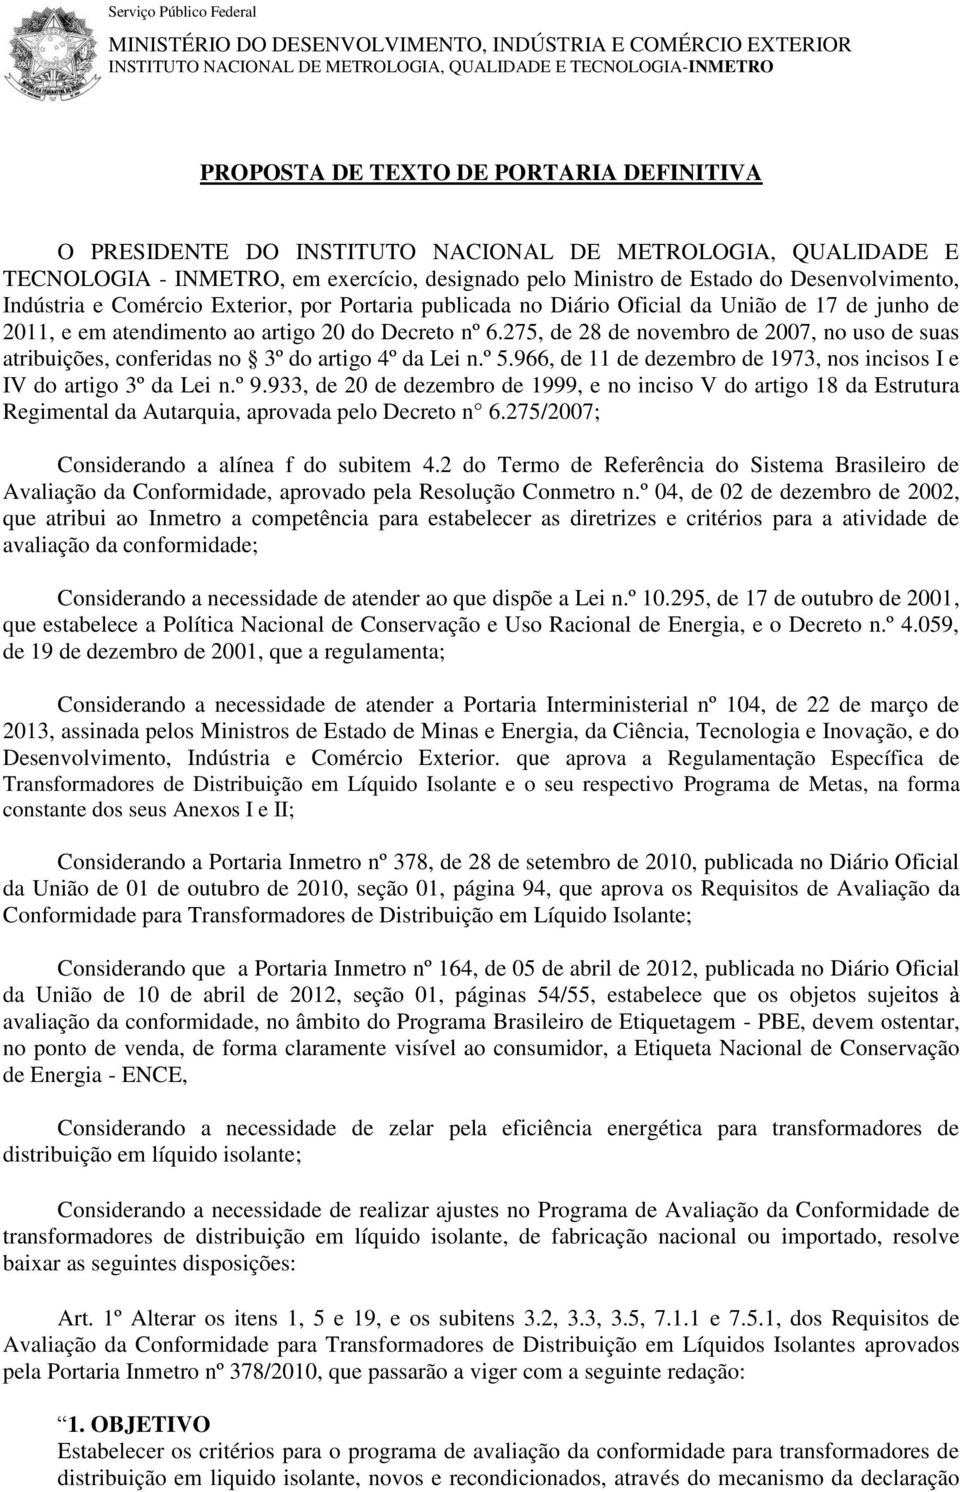 publicada no Diário Oficial da União de 17 de junho de 2011, e em atendimento ao artigo 20 do Decreto nº 6.